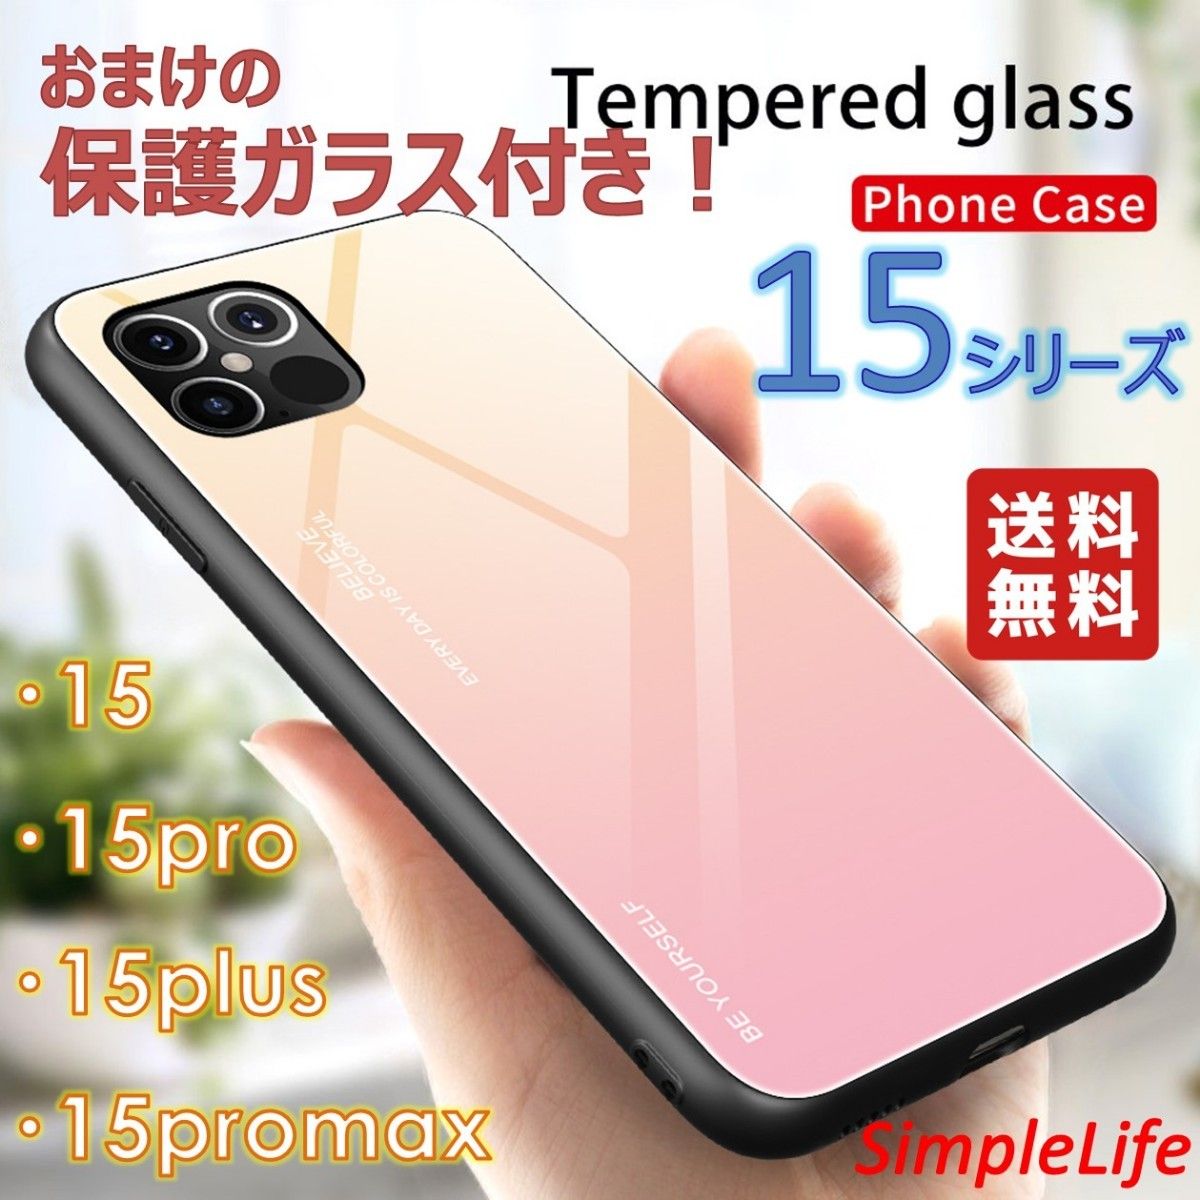 おまけ付き 桜ピンク iphone 15 Pro Max plus promax アイフォン 15 プロ マックス プラス